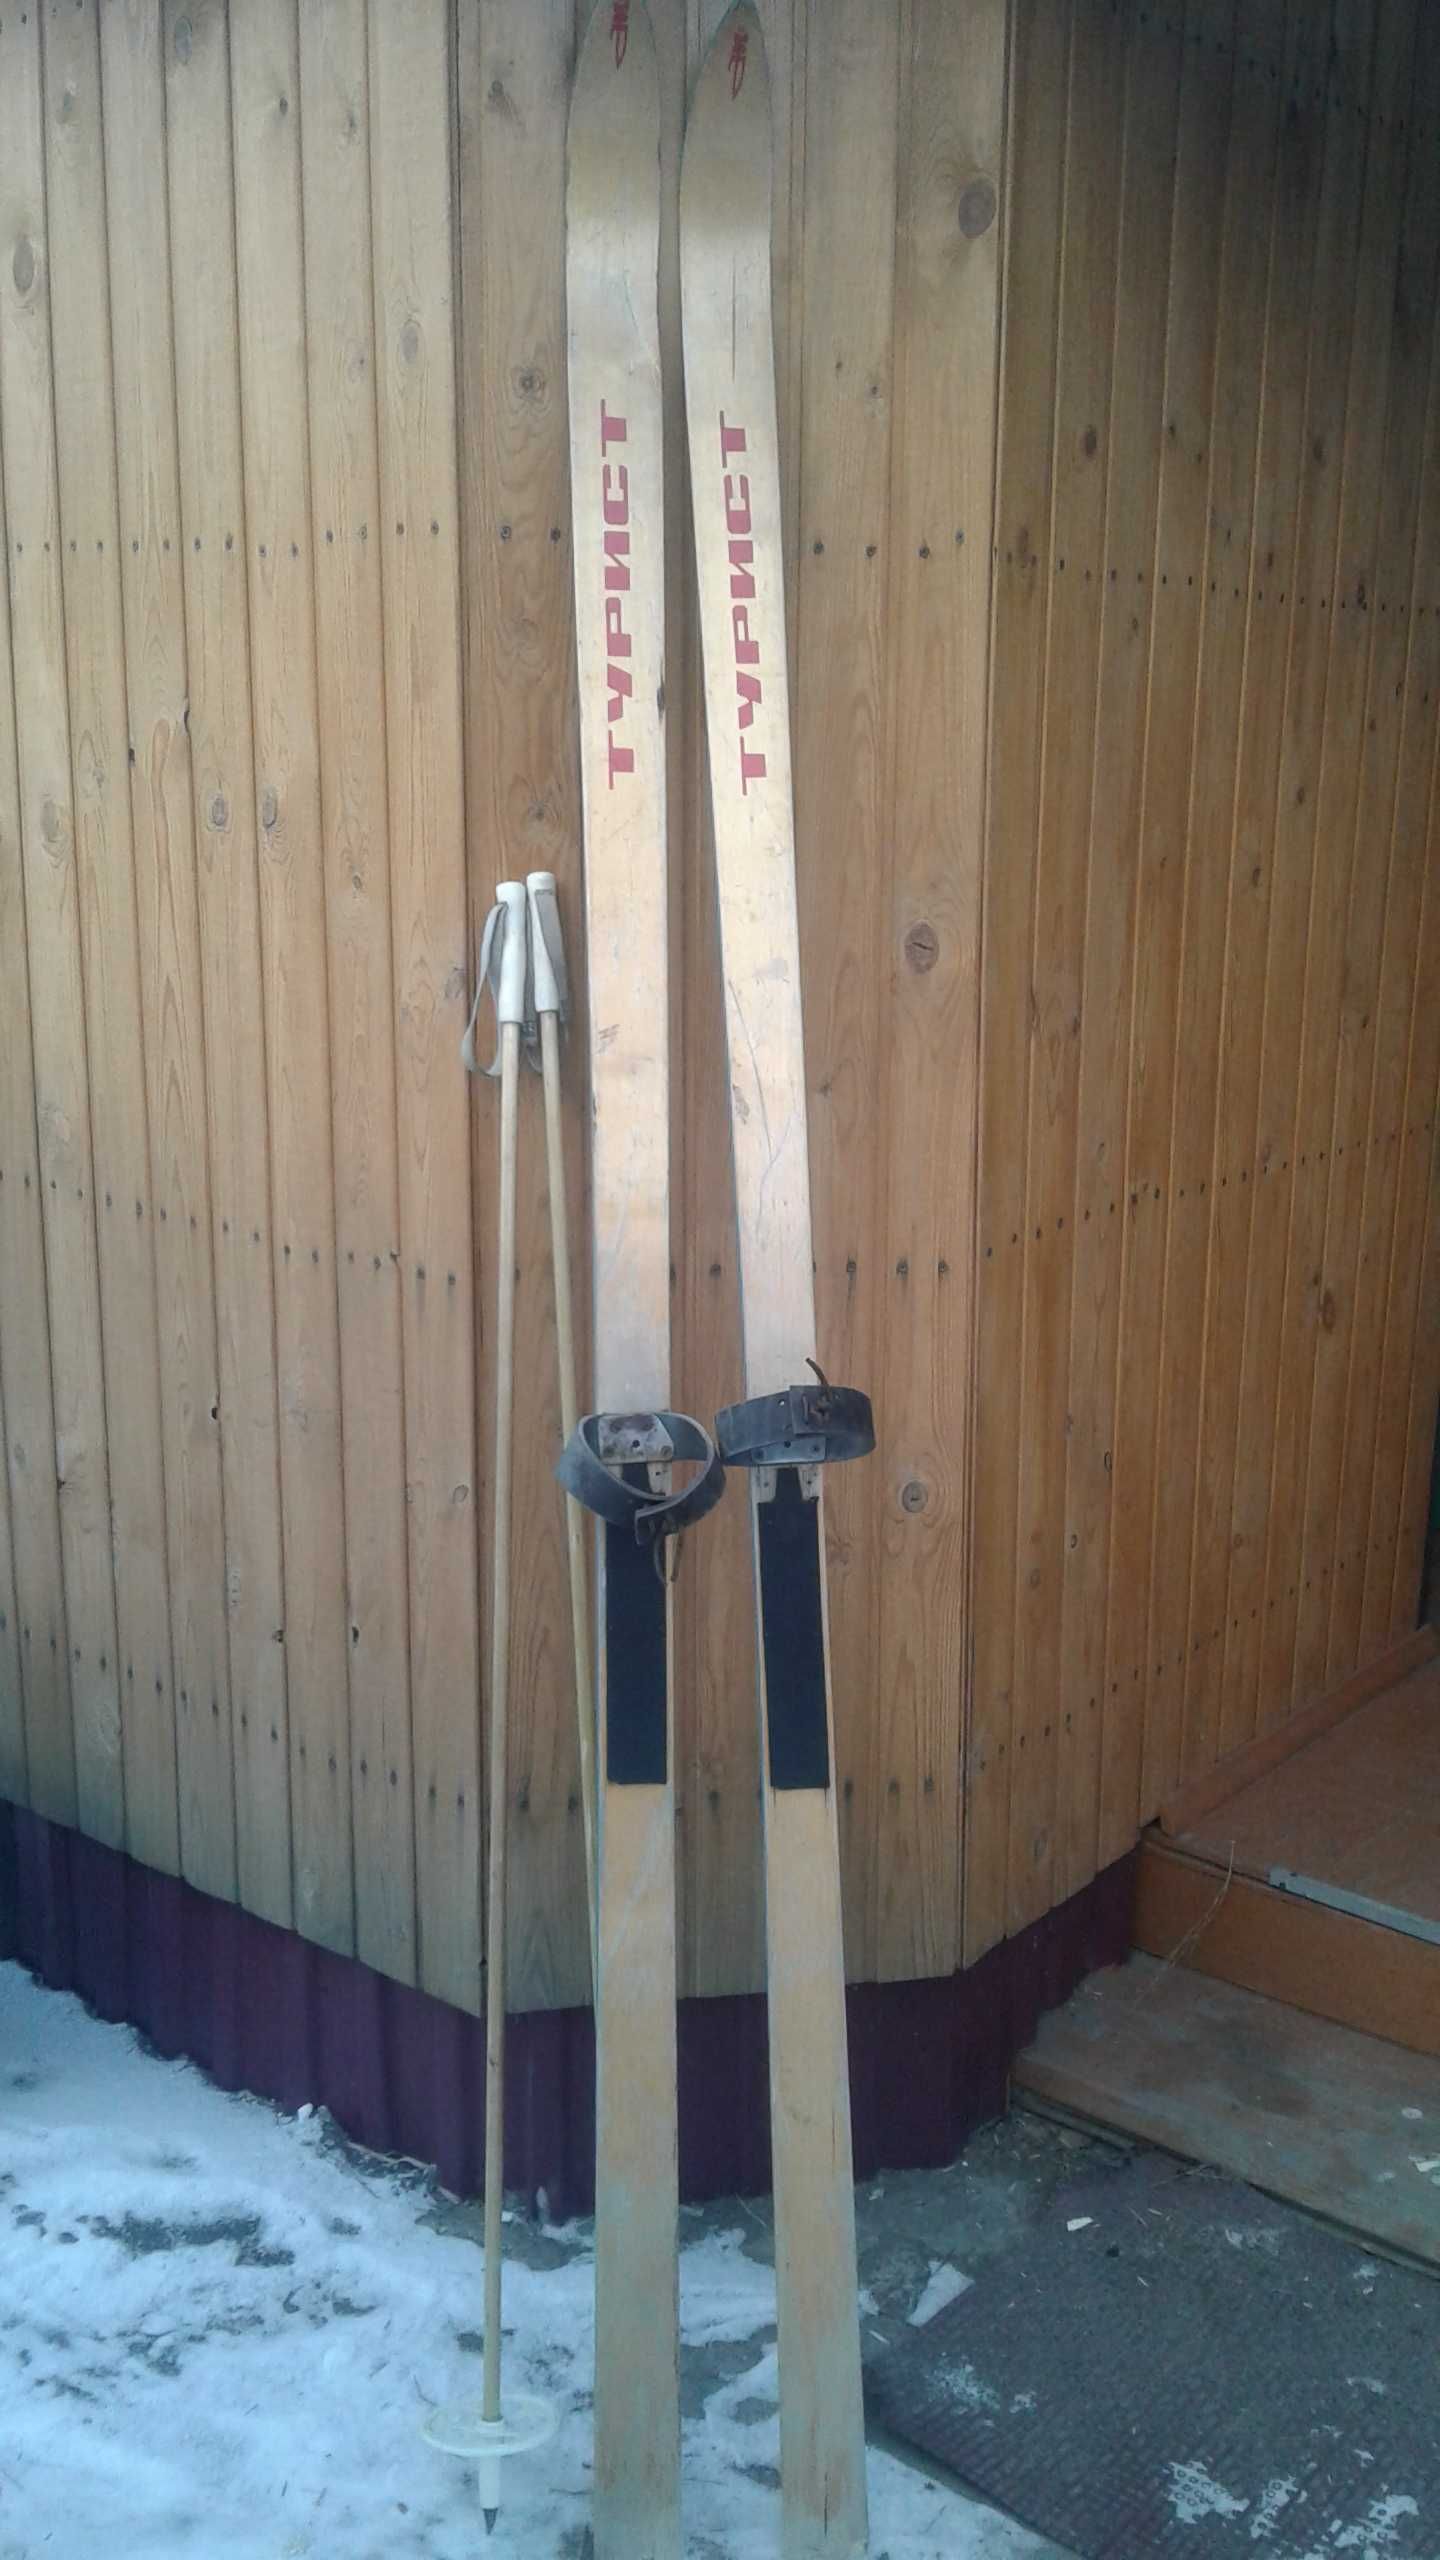 Лыжи для похода за здоровьем